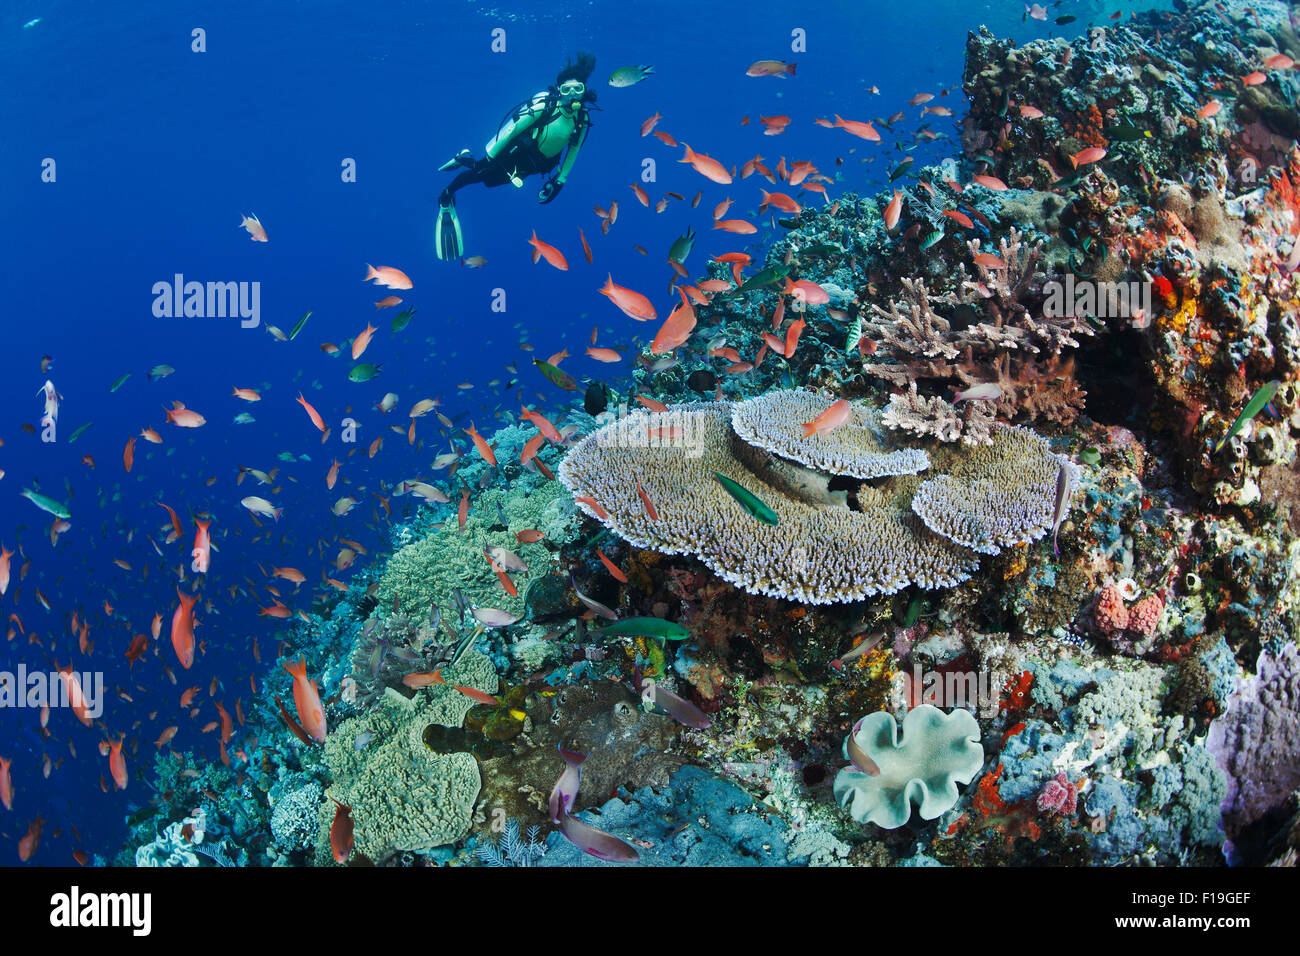 Px0152-D. Scuba Diver (modelo liberado) admira arrecifes sanos con diversidad de corales duros y blandos y abundante vida de los peces. Foto de stock